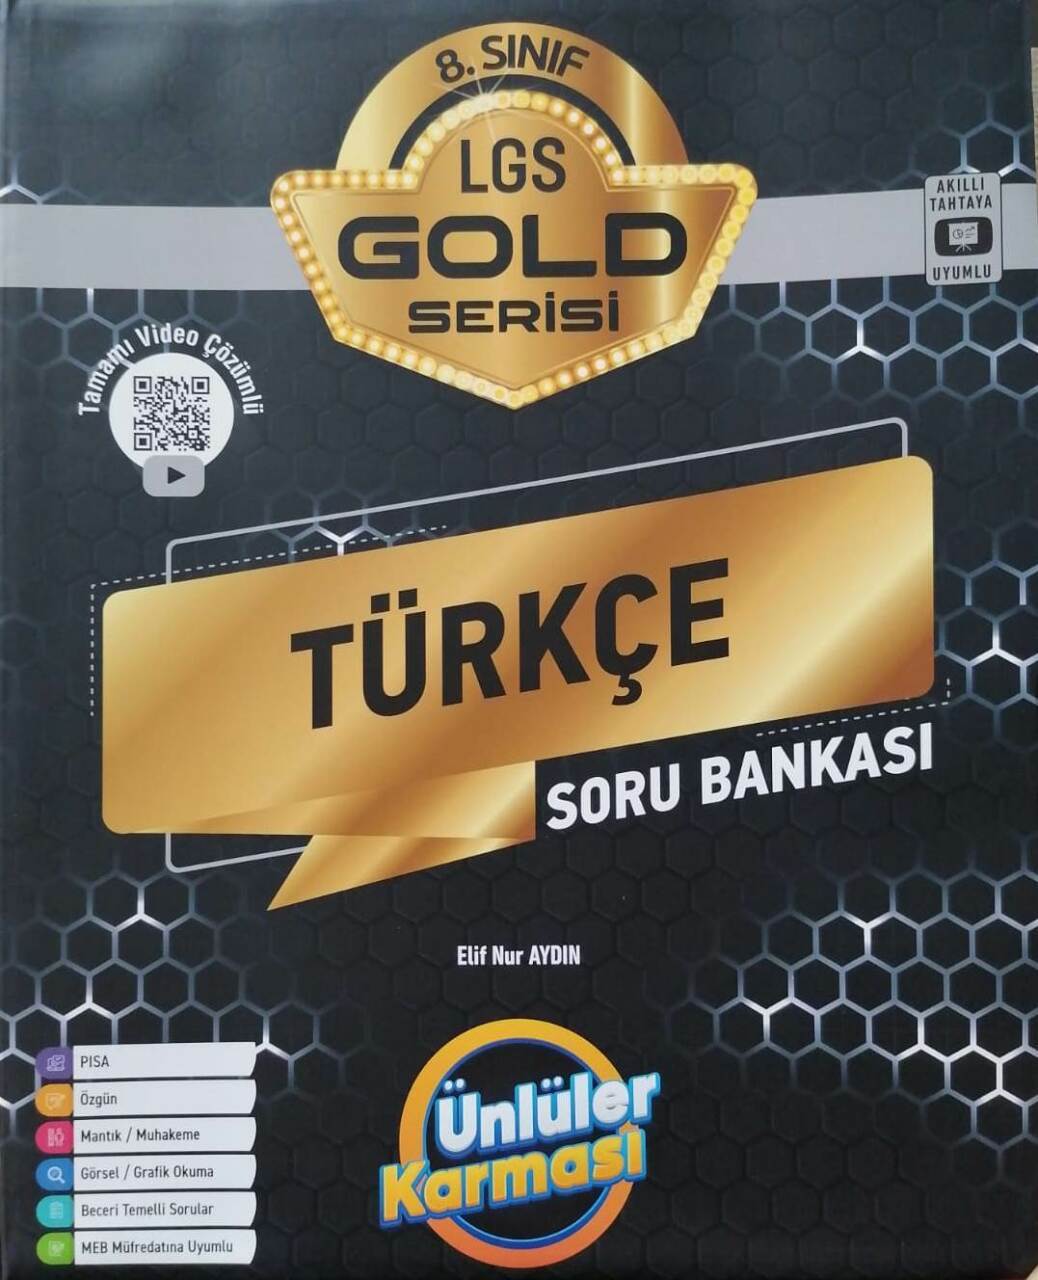 Ünlüler Karması 8.Sınıf LGS Türkçe GOLD Serisi Soru Bankası